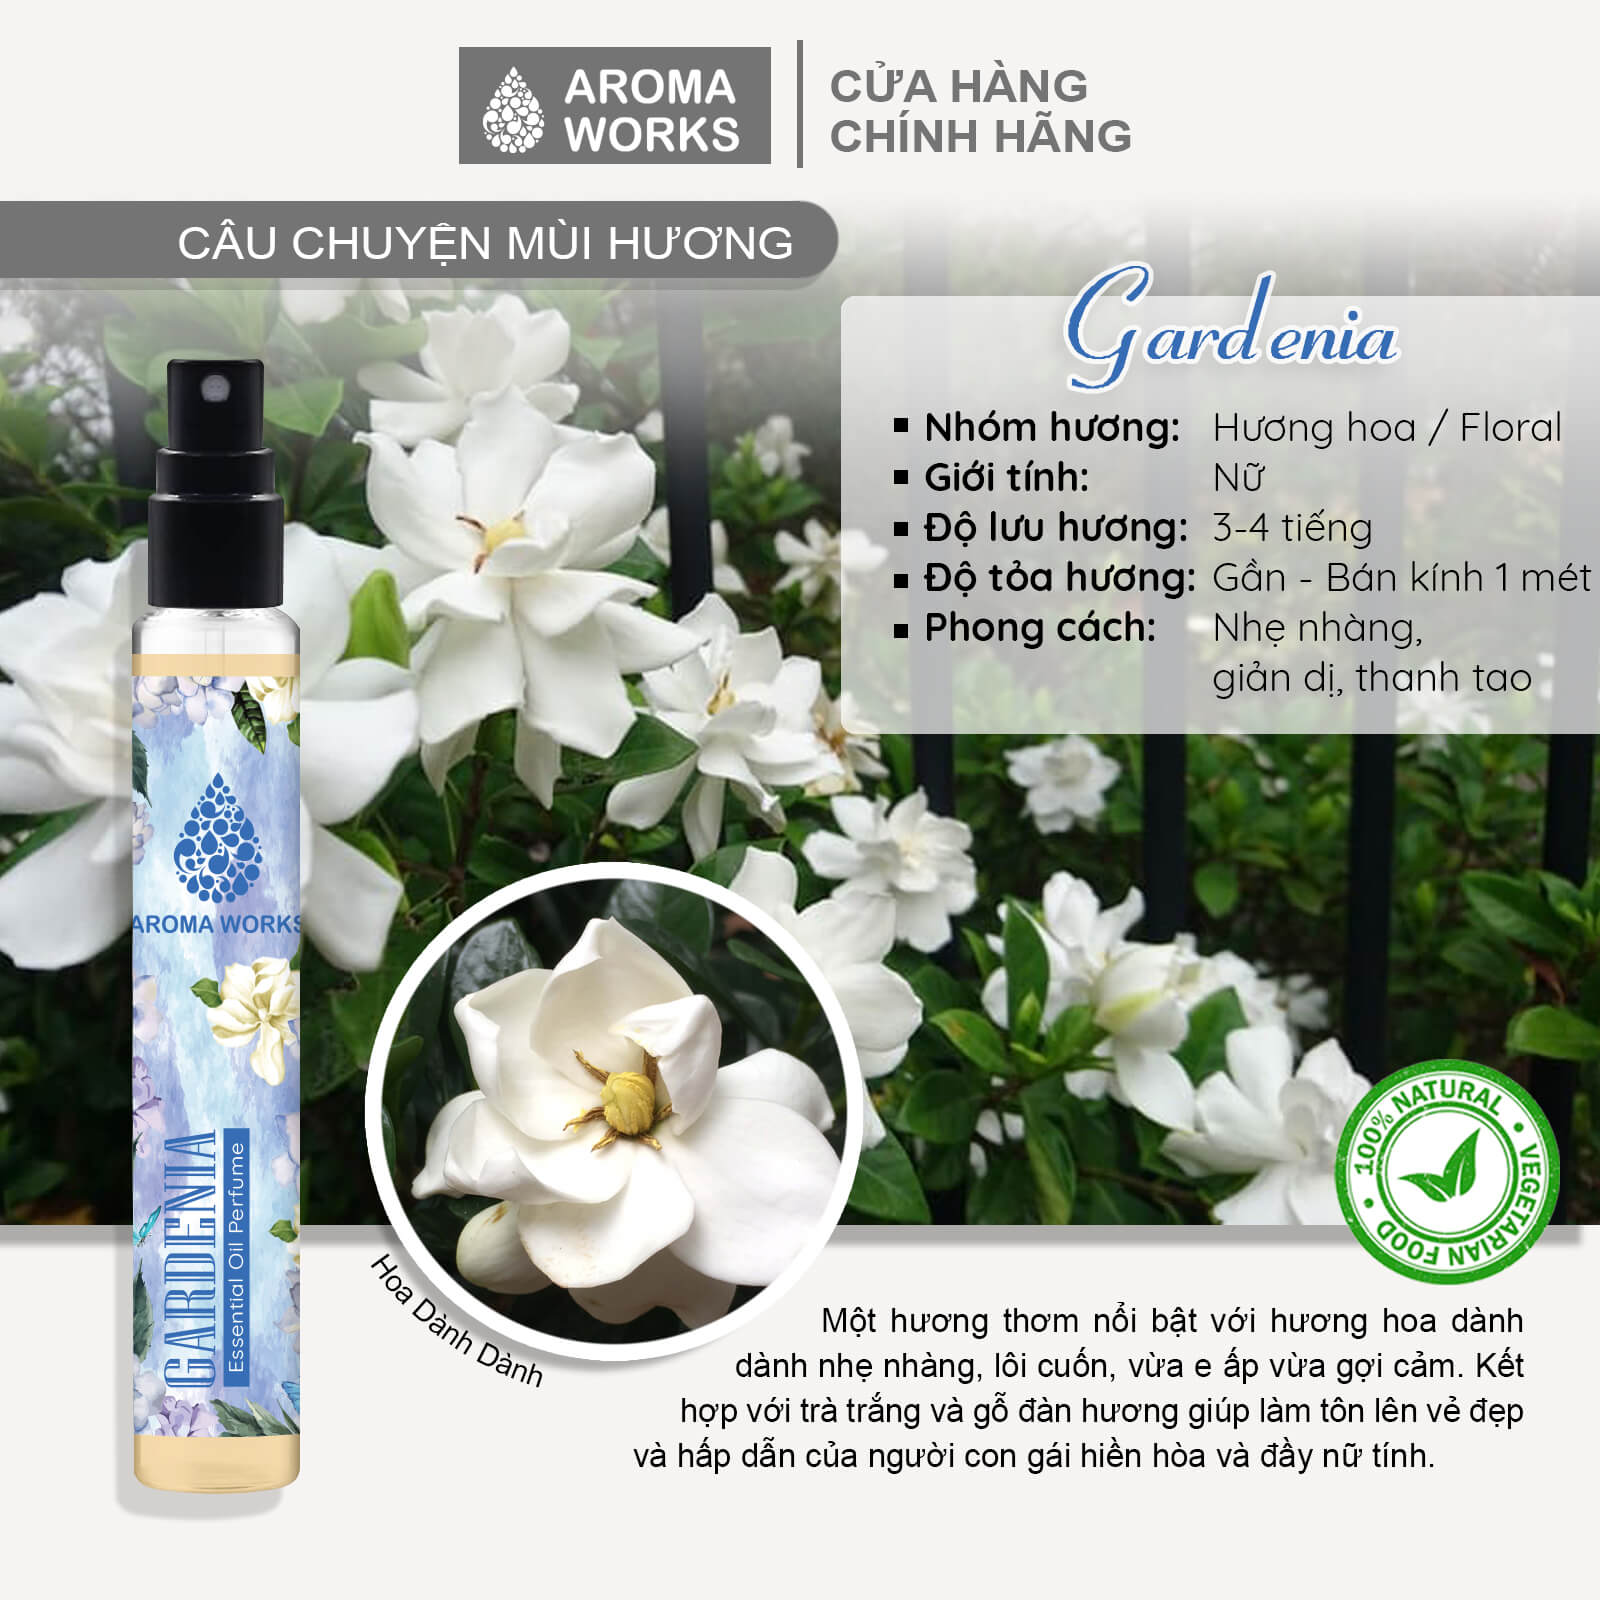 Tinh dầu nước hoa không cồn, lưu hương lâu Aroma Works Gardenia Essential Oil Perfume 10ml - Hương Hoa Dành Dành